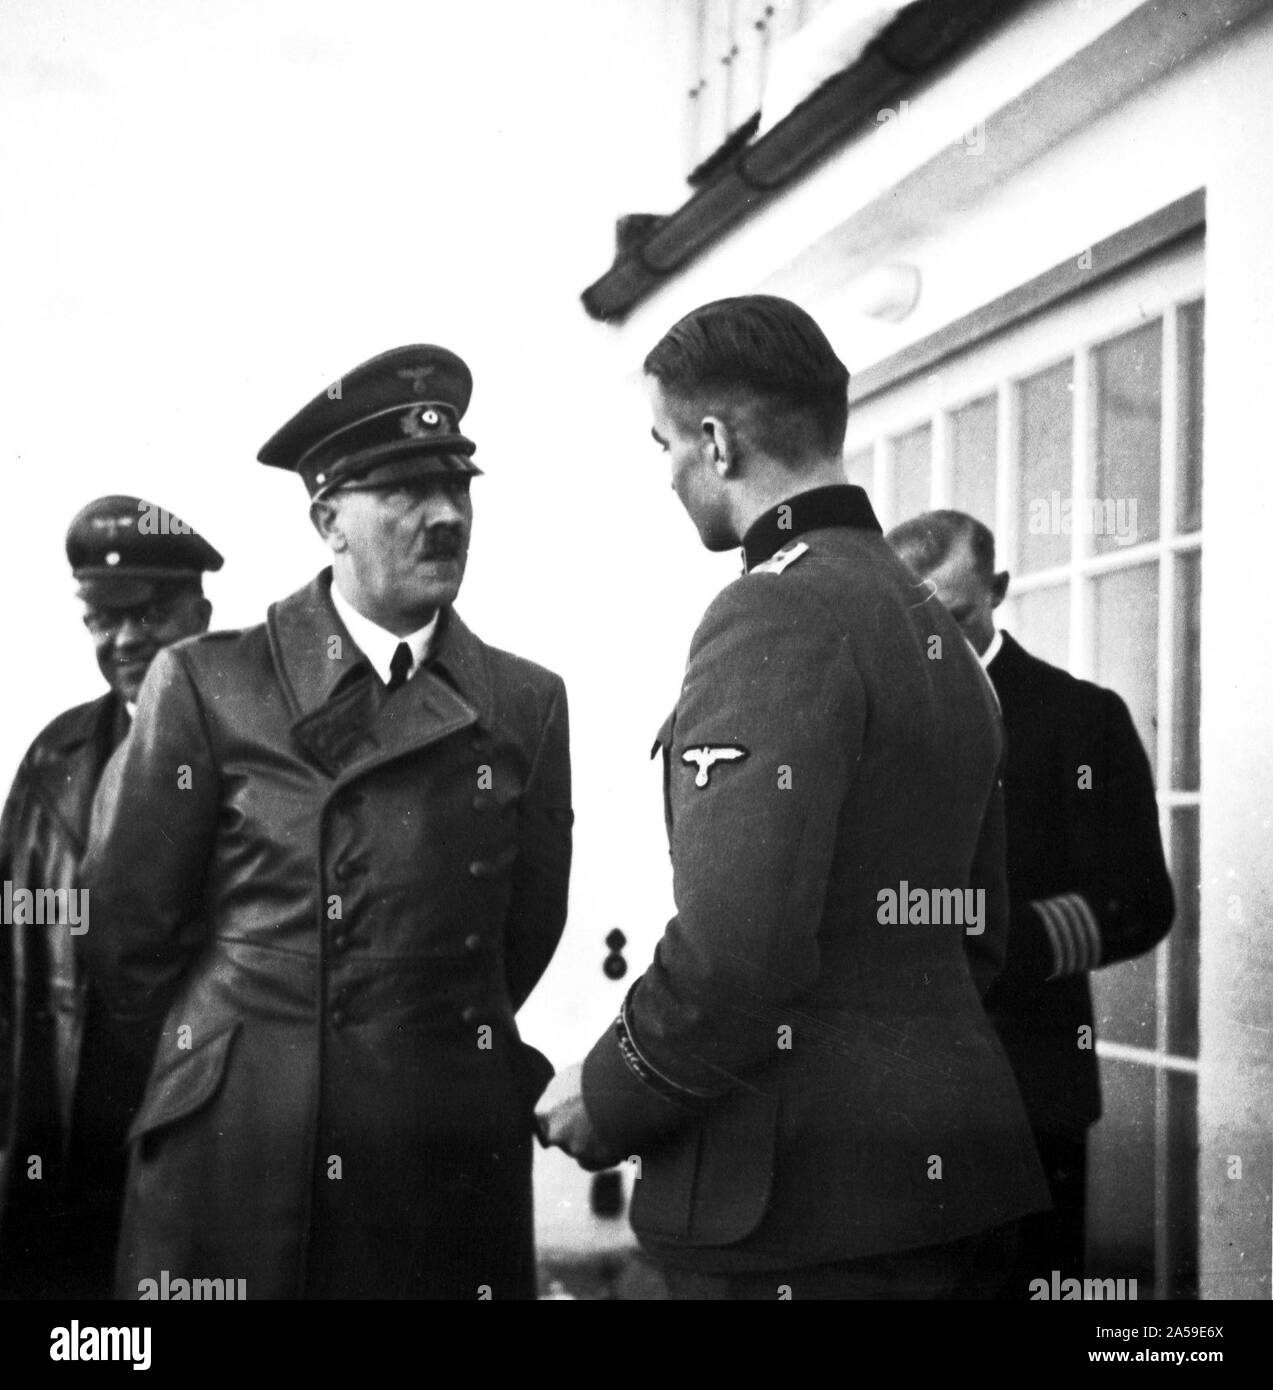 Eva Braun Sammlung (dvadvadaset) - Adolf Hitler im Gespräch mit einem Soldaten Ca. 1930s oder 1940s Stockfoto